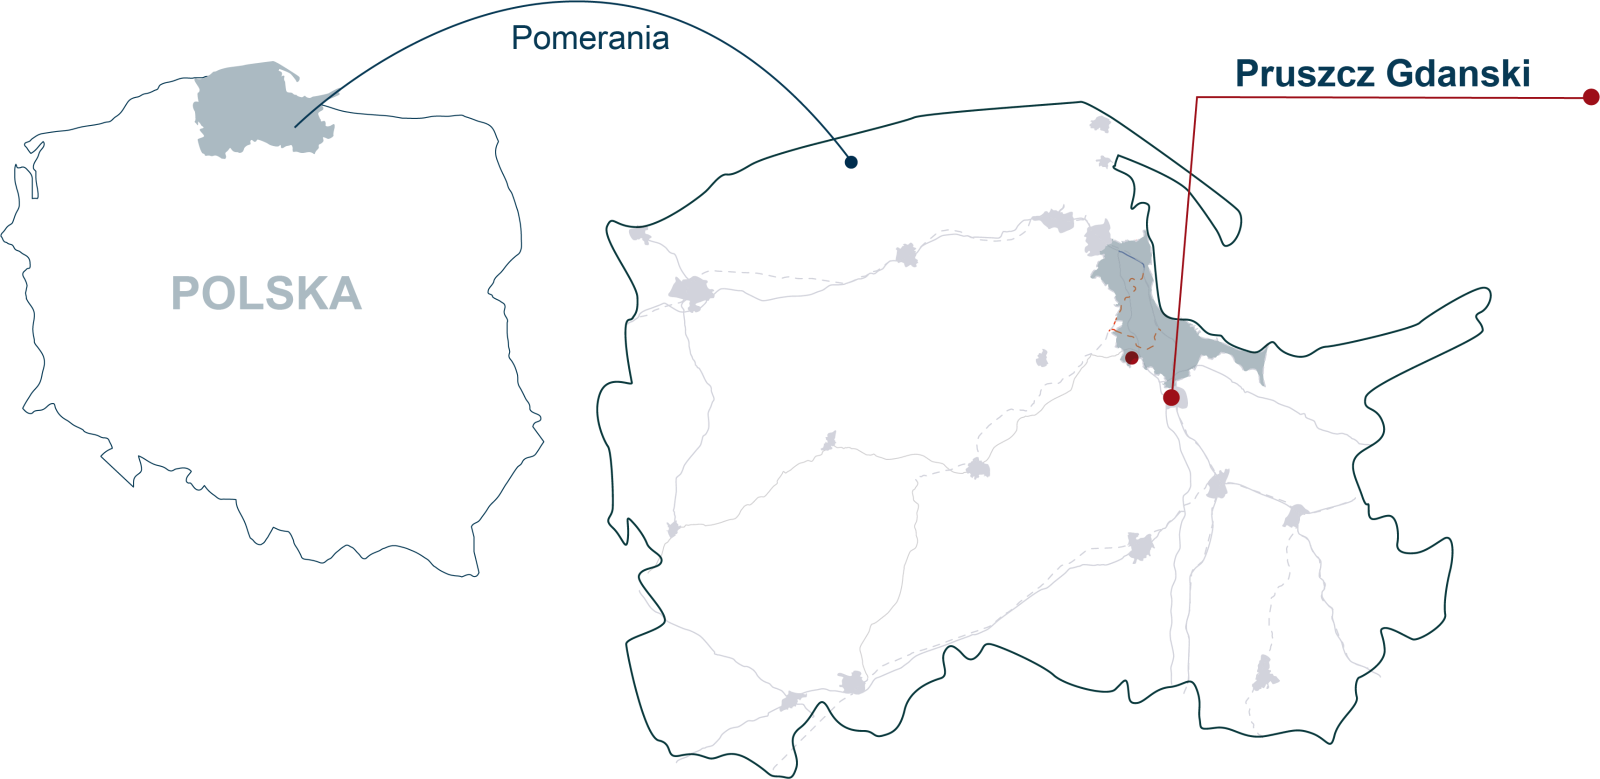 Mapa Polski ze wskazaniem lokalizacji województwa pomorskiego oraz miasta pruszcz Gdański.